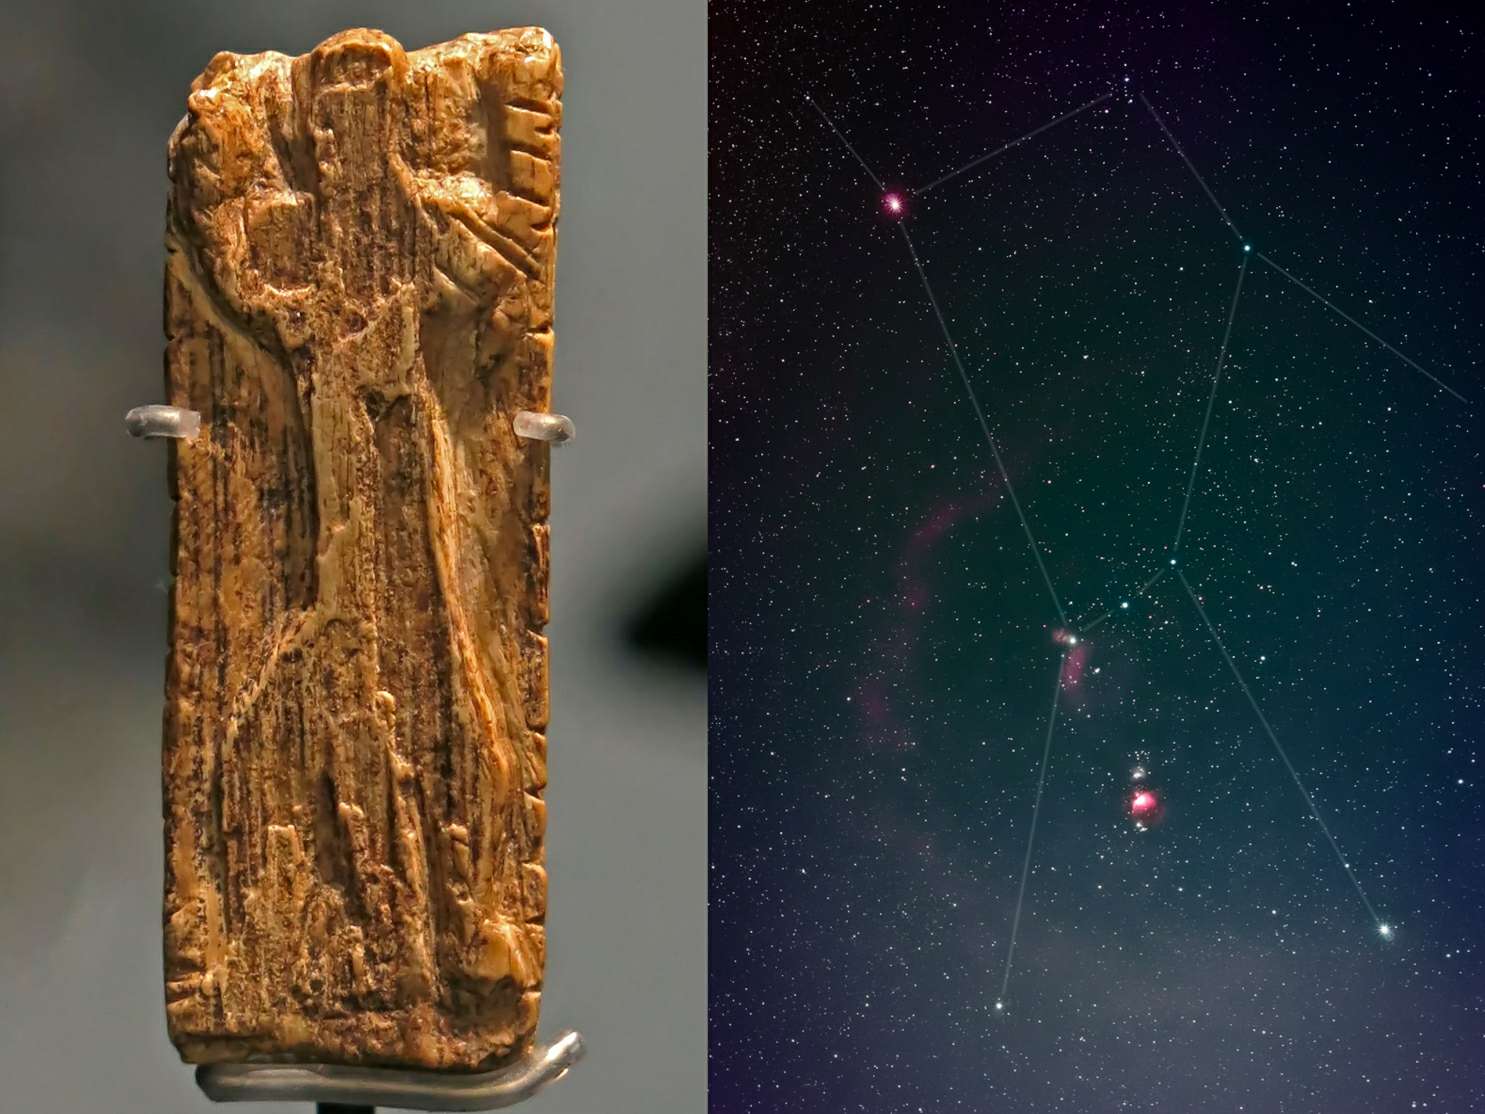 L'immagine più antica di un motivo a stella, quella della famosa costellazione di Orione, è stata riconosciuta su una tavoletta d'avorio di circa 32,500 anni. Il minuscolo frammento di zanna di mammut contiene una scultura di una figura simile a un uomo con braccia e gambe distese nella stessa posa delle stelle di Orione.